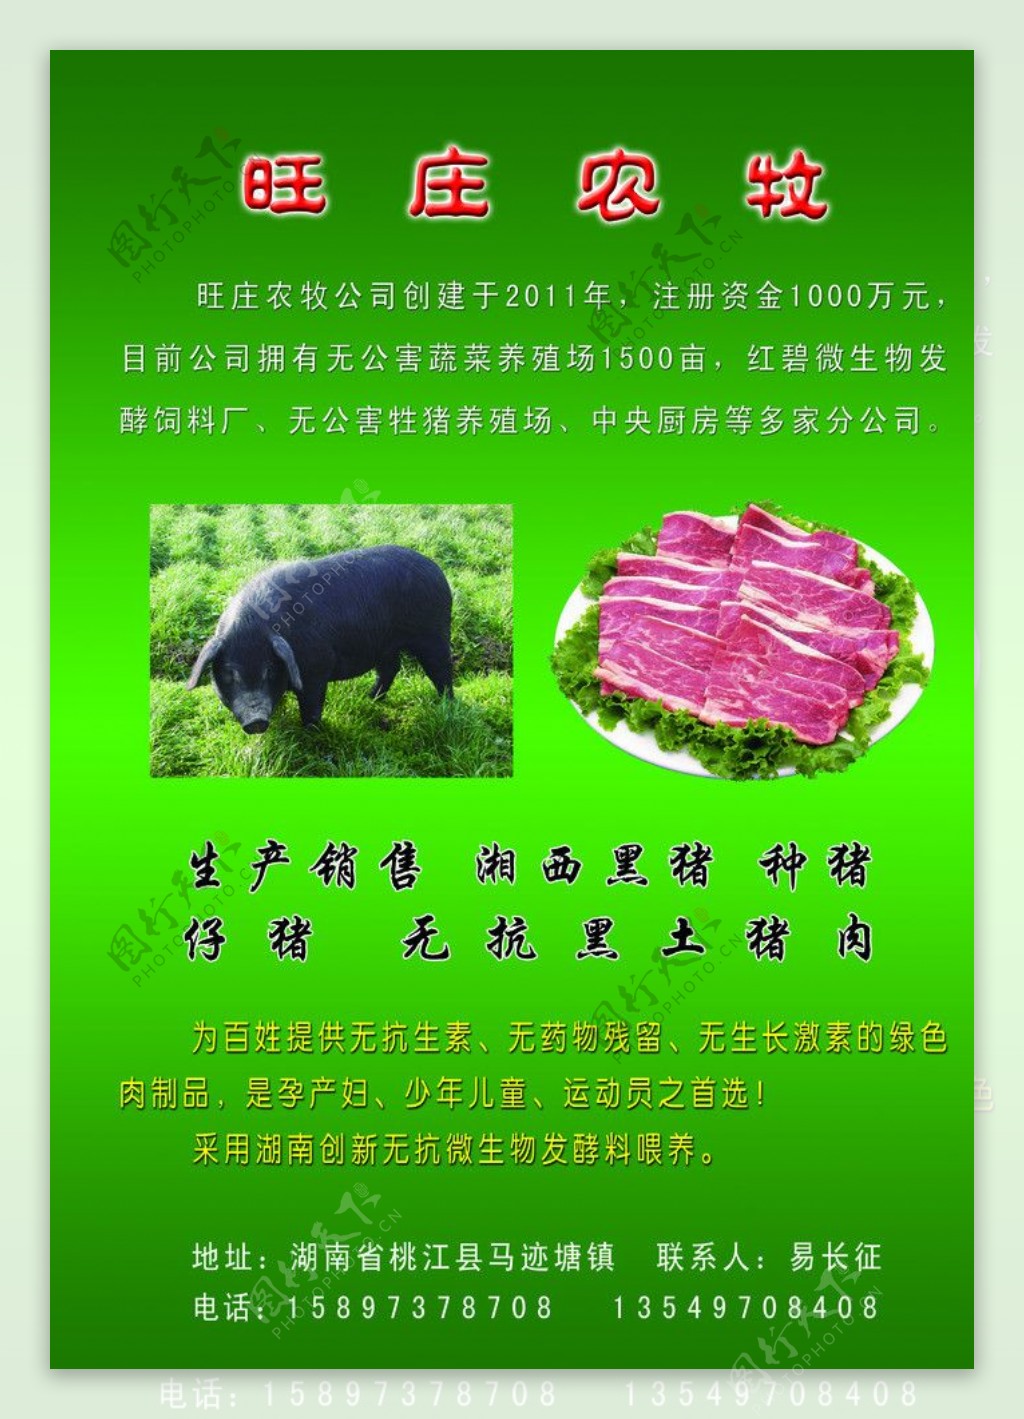 旺庄农牧宣传图片